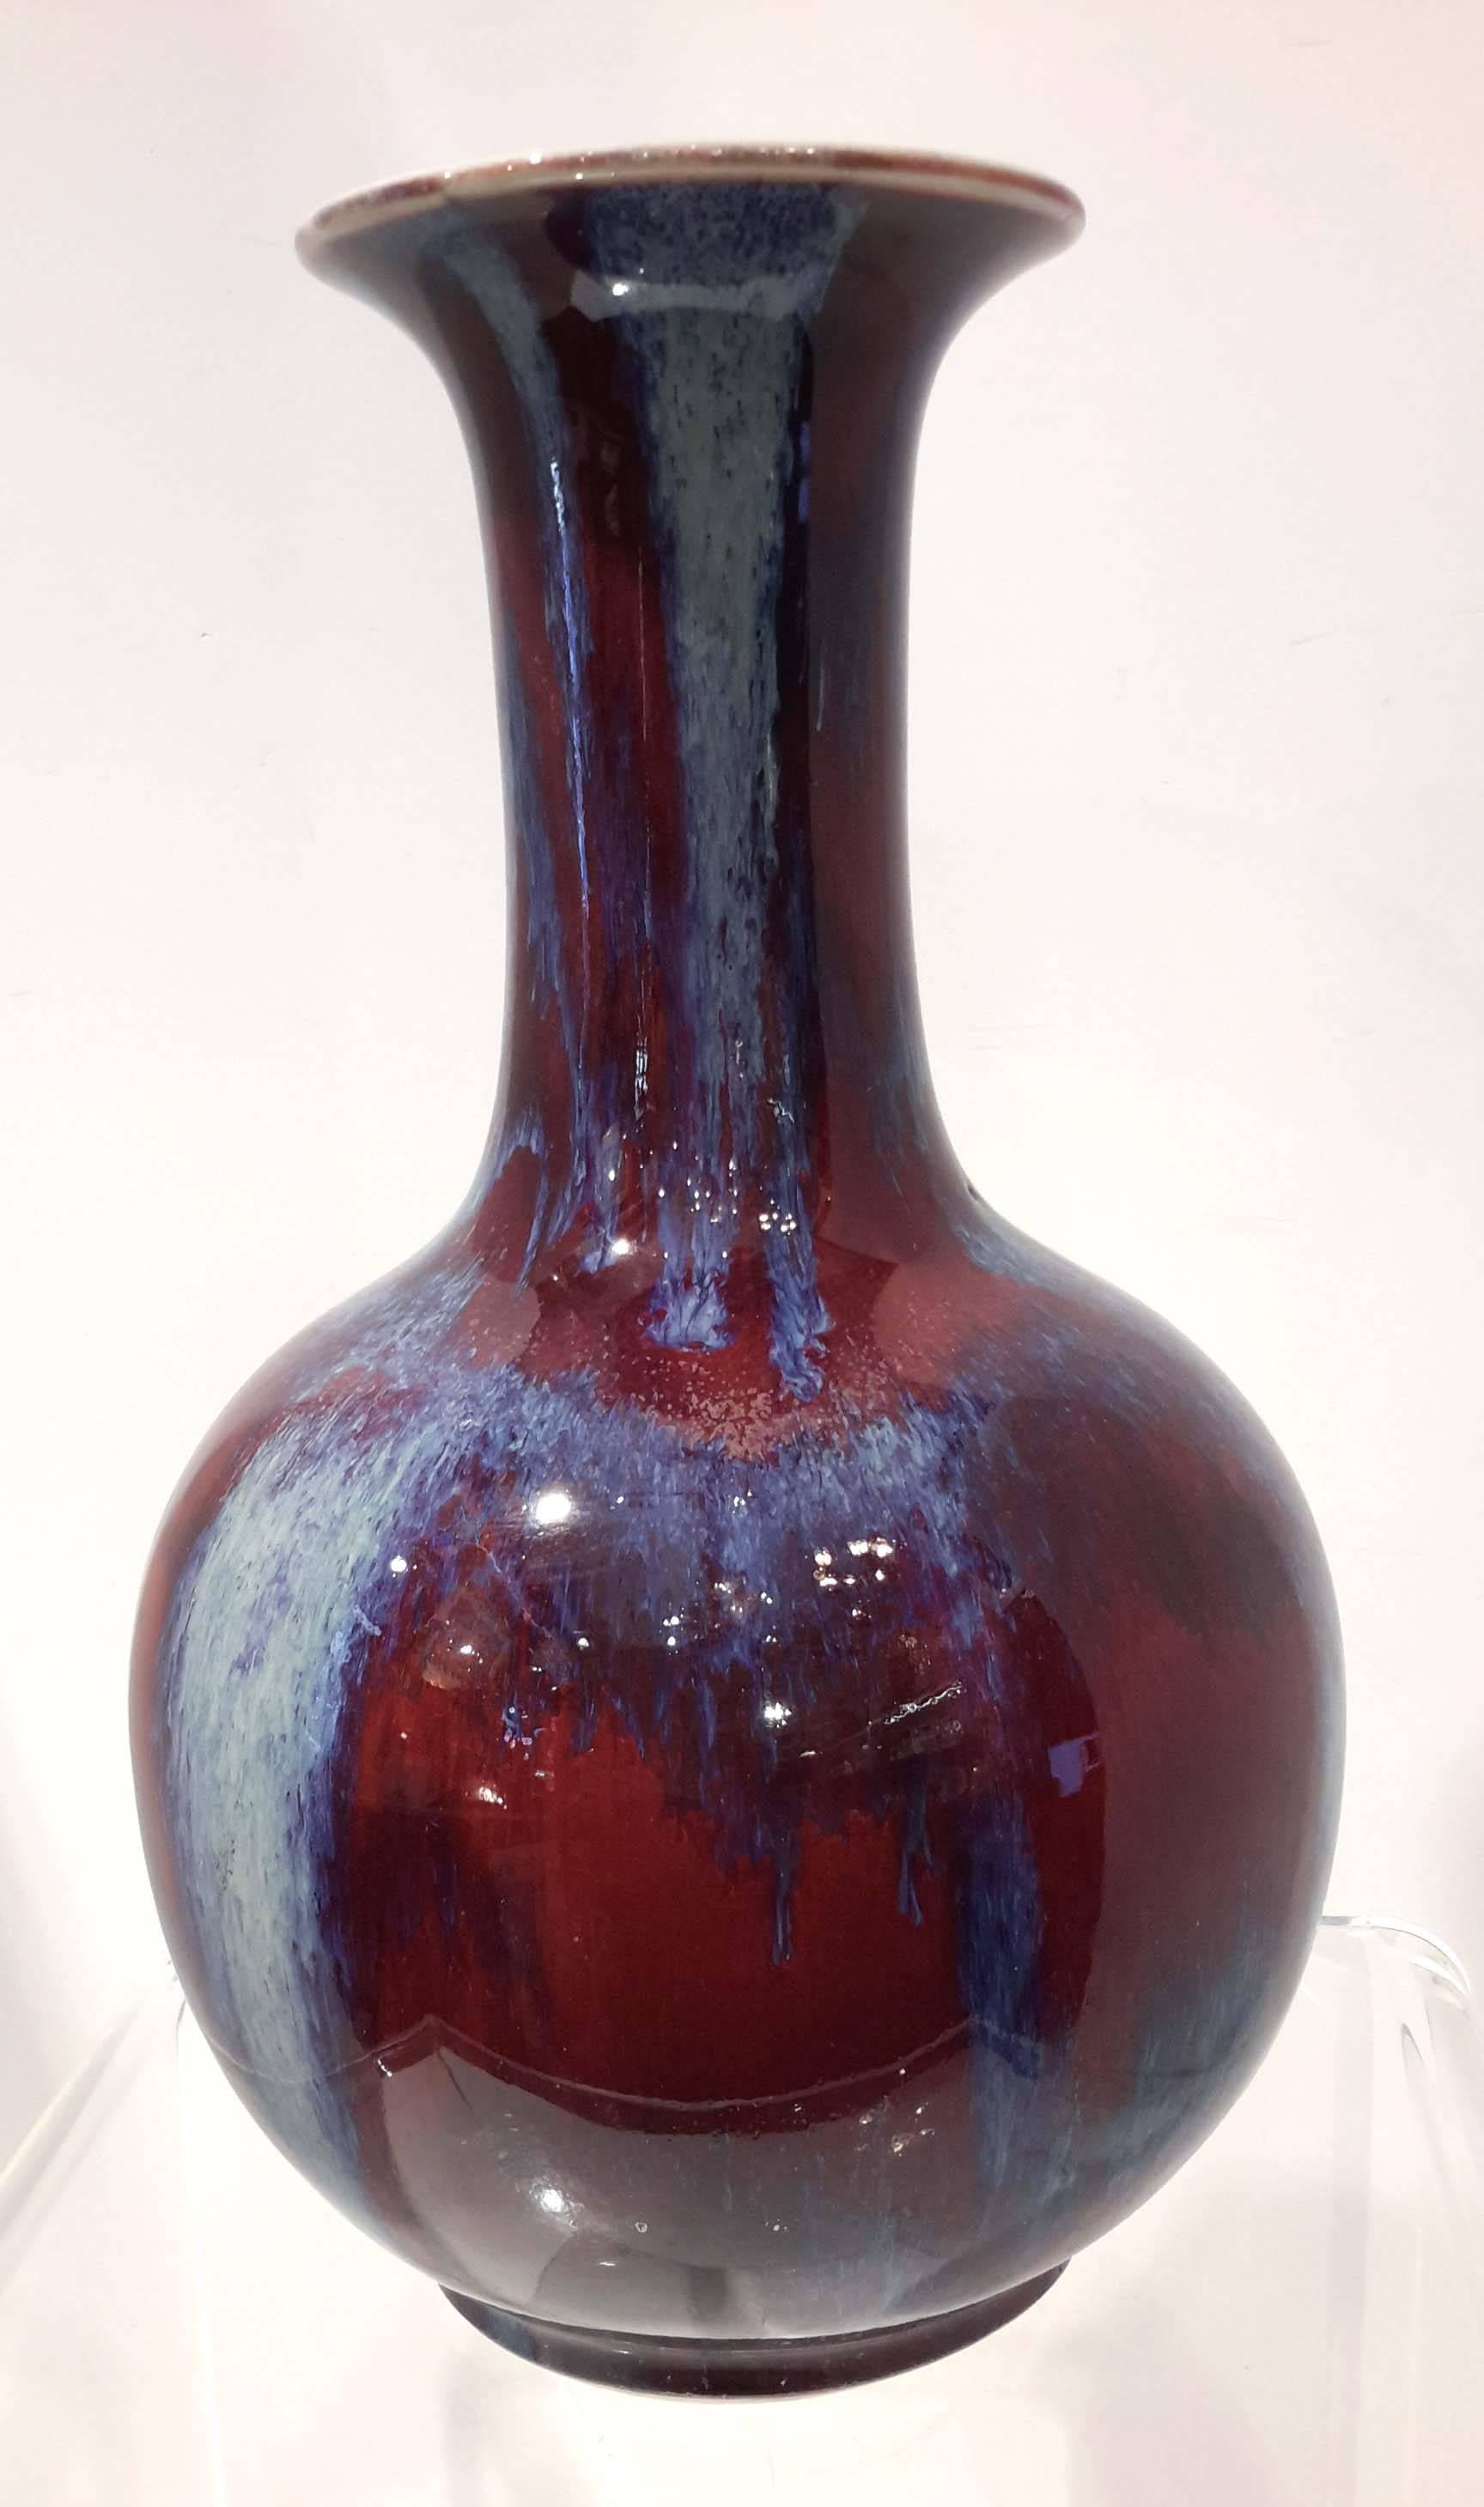 Beautiful shape and great flambe glazed porcelain vase.